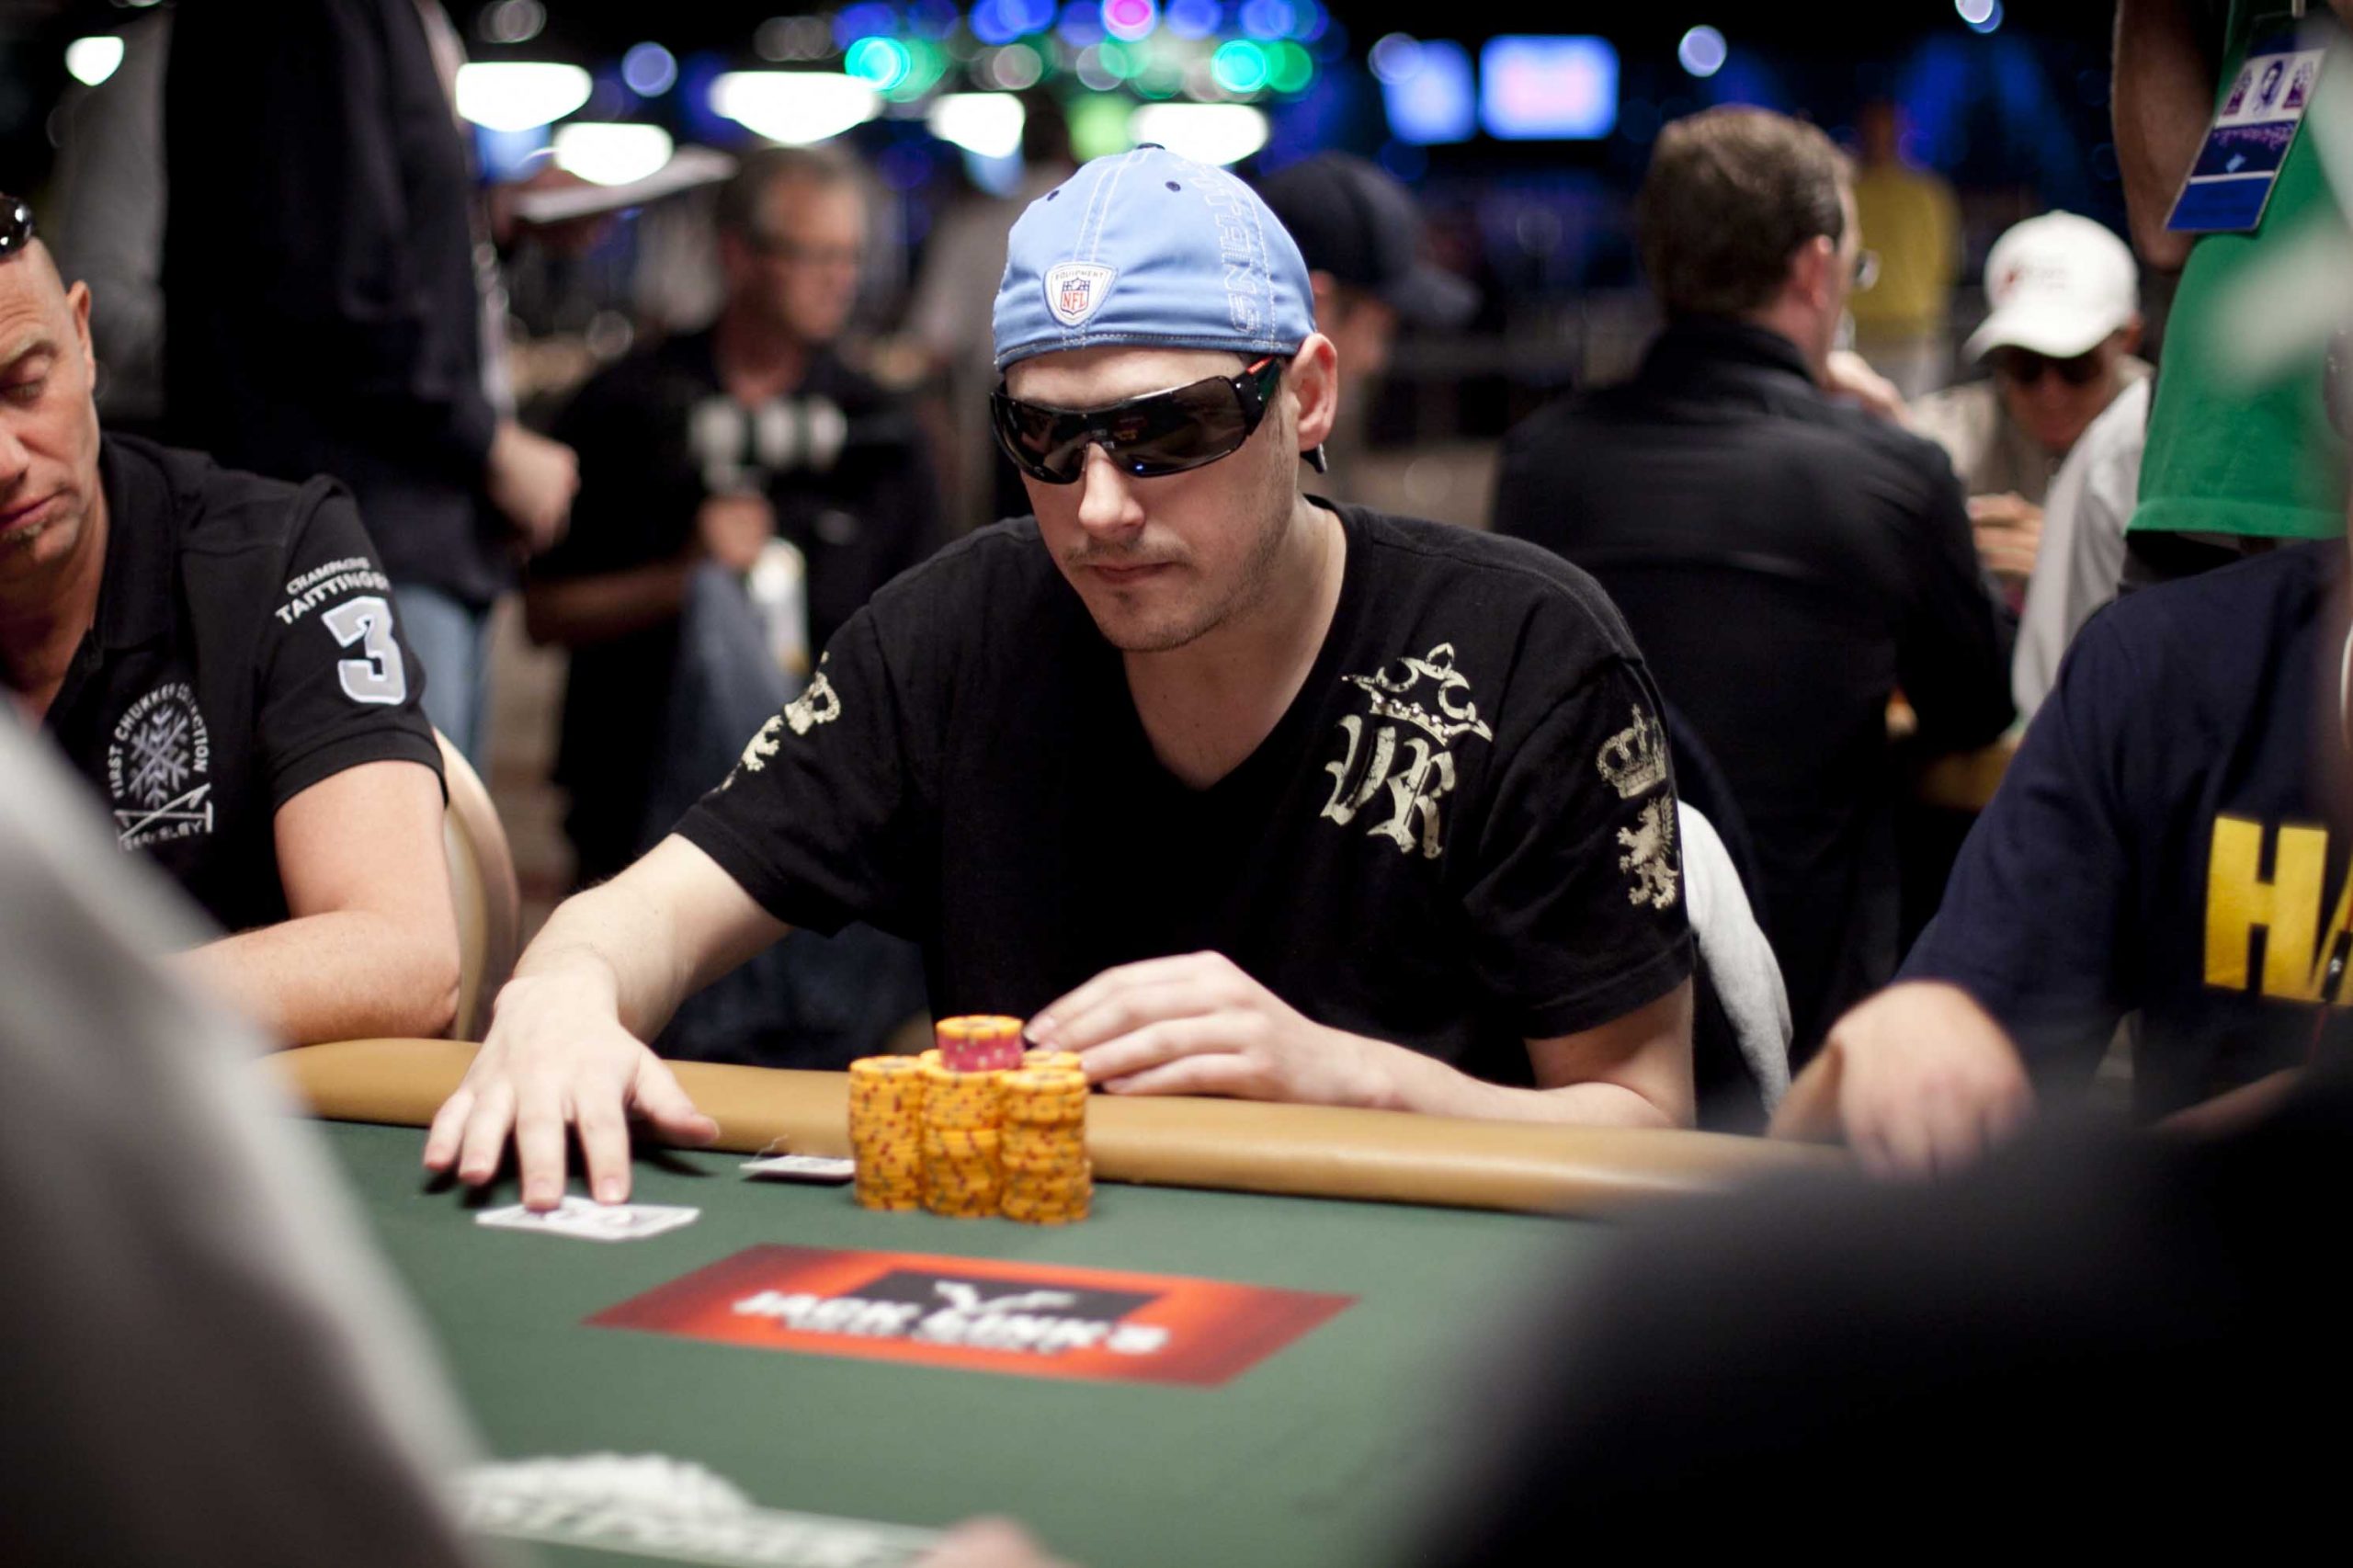 Di Mana Mereka Sekarang: Dustin Woolf Kembali di Poker Tapi Bukan sebagai Pemain